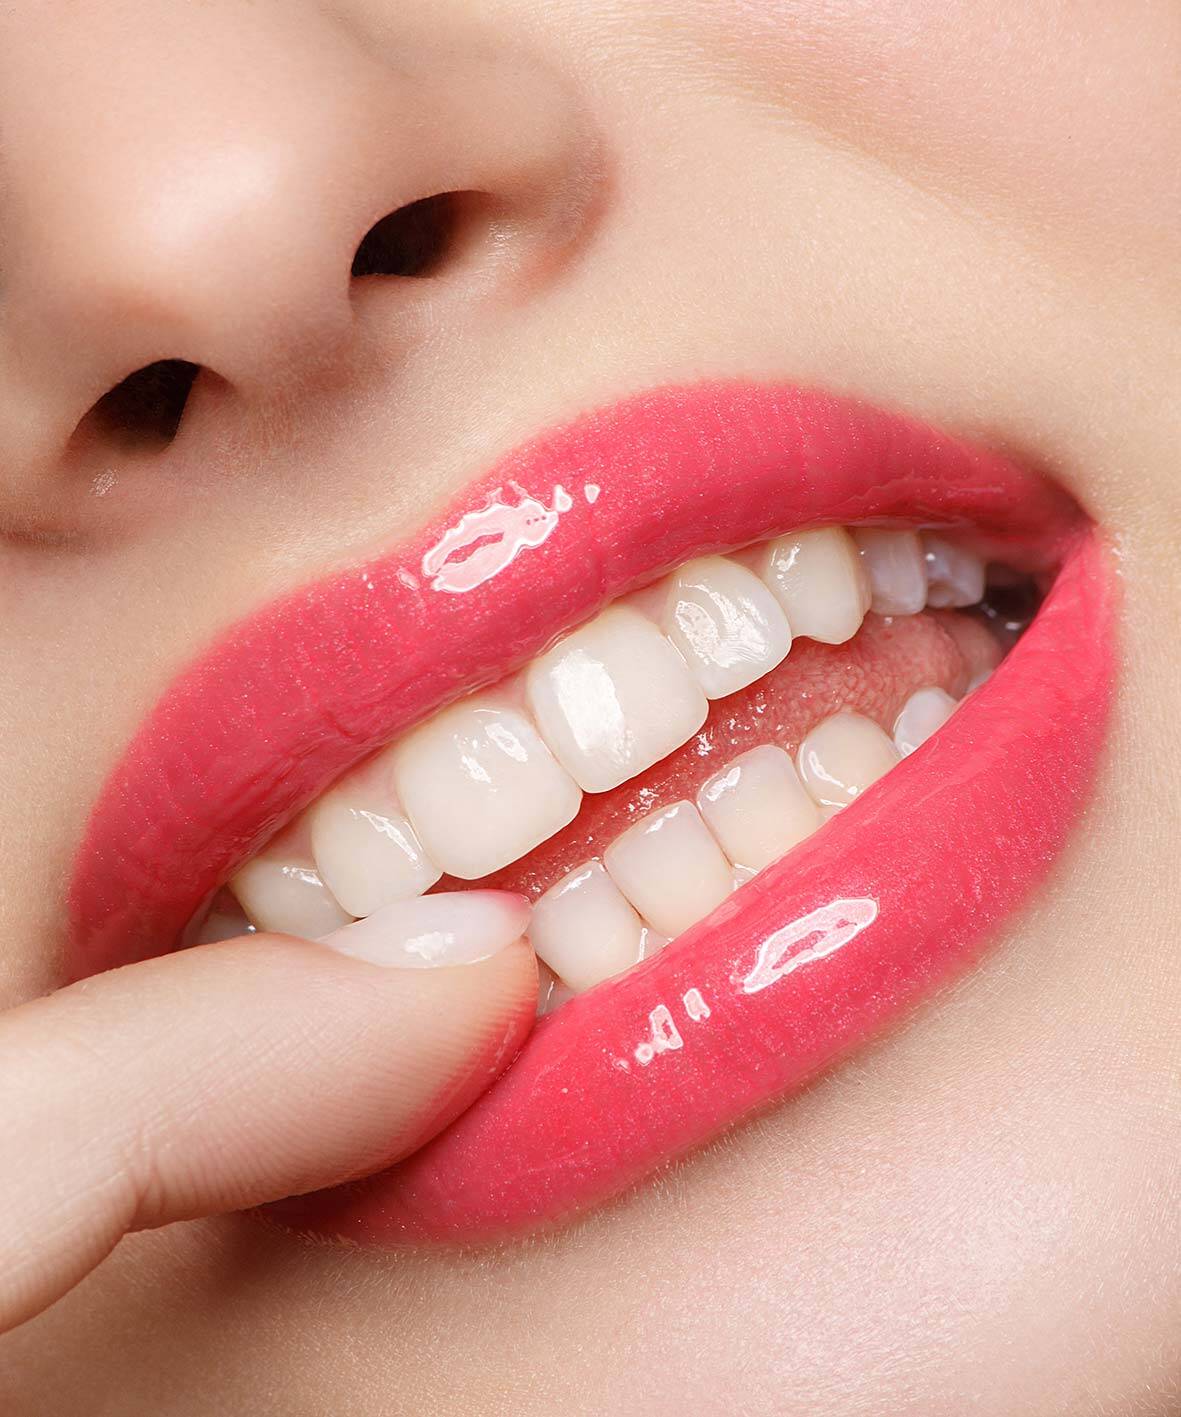 LusciousLips® das Smart-Aging und Anti-Aging Lipgloss. Ideal zur Pflege der Lippen. 
Ideal als Ergänzung zu einer Lippen-Unterspritzung. LusciousLips ist das Lipgloss das von Dermatolog*innen empfohlen wird. 